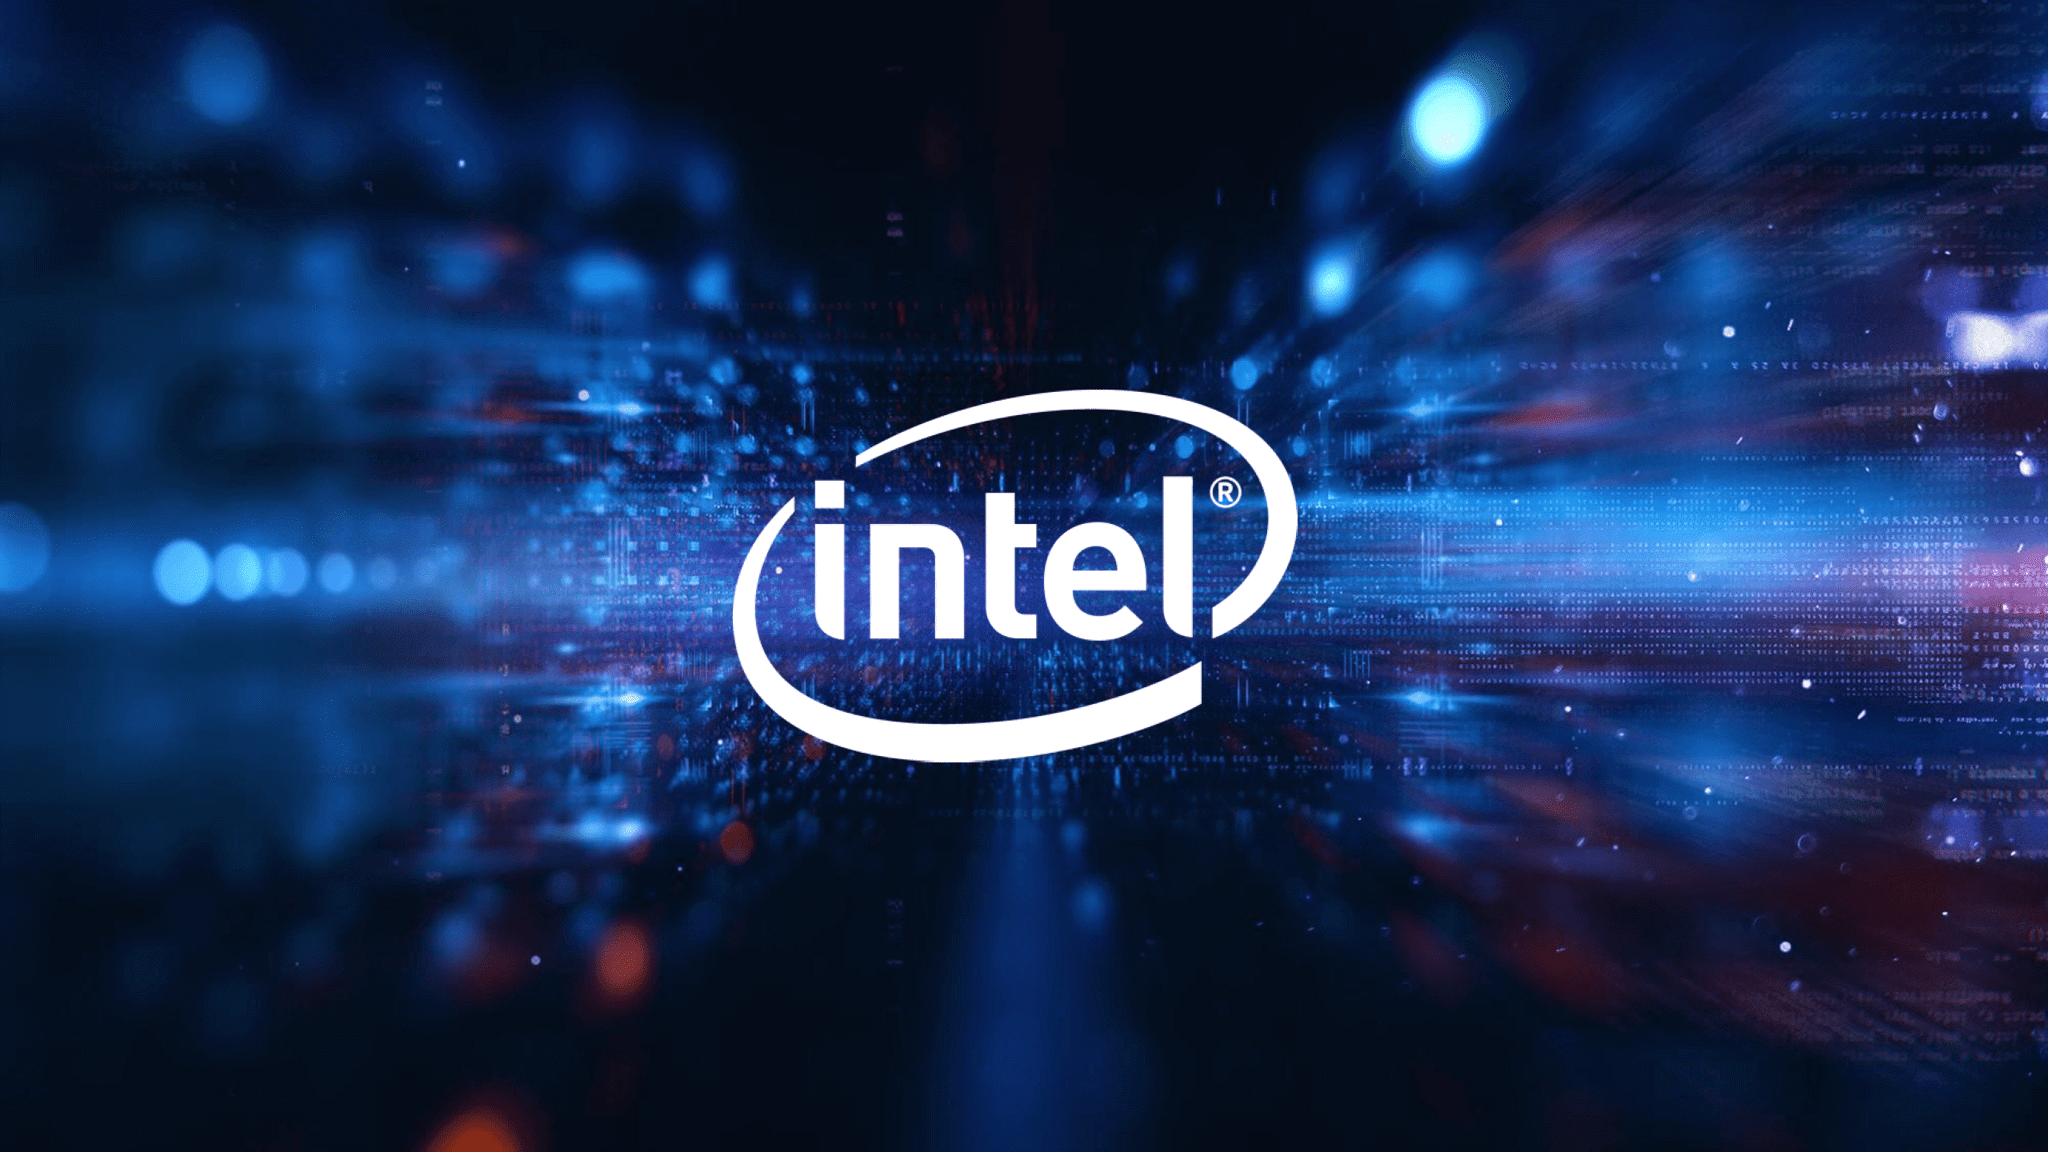 Apple chuyển sang chip M1 khiến thị phần Intel có thể giảm mạnh vào năm 2022